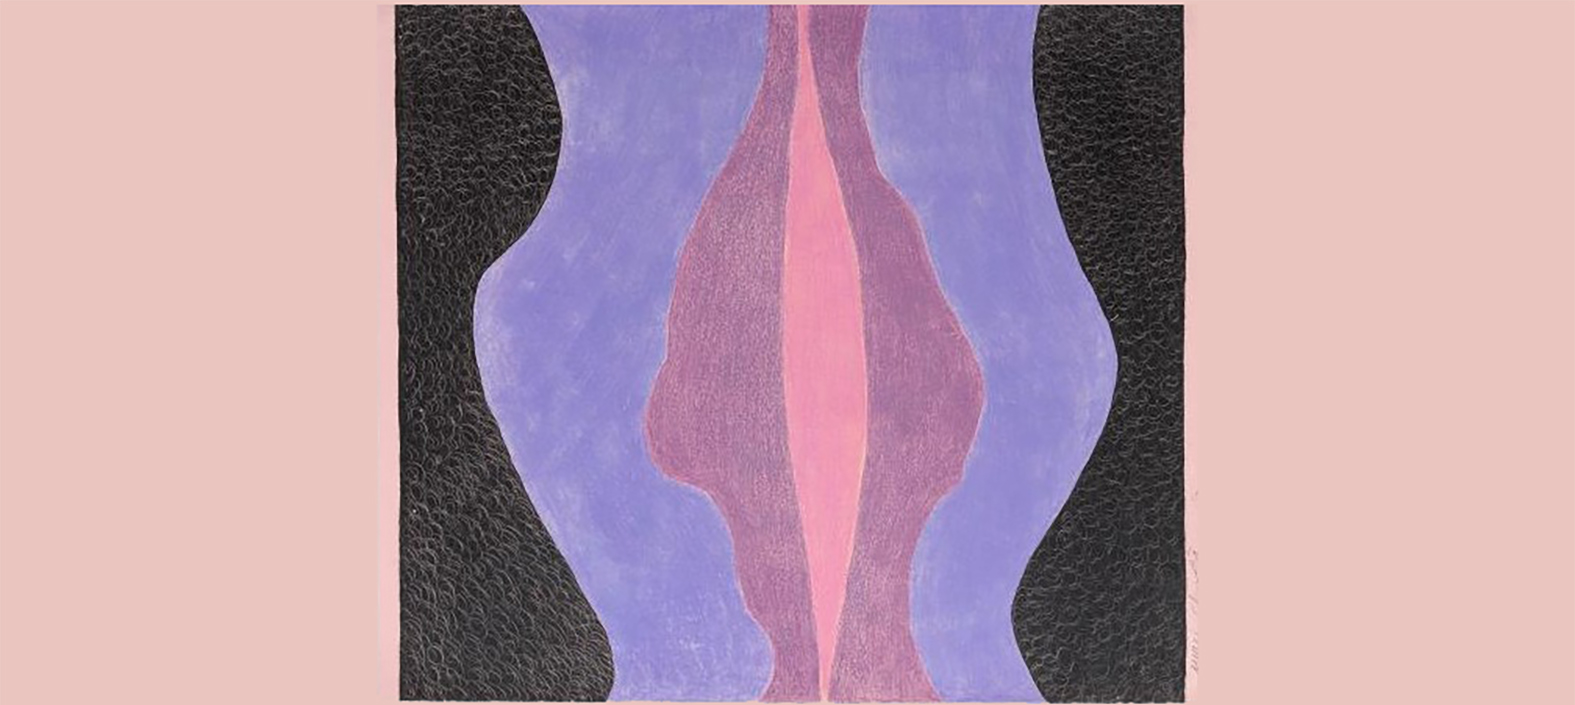 'Vulva', 1968, de la pintora ampostina. Cera sobre cartró.